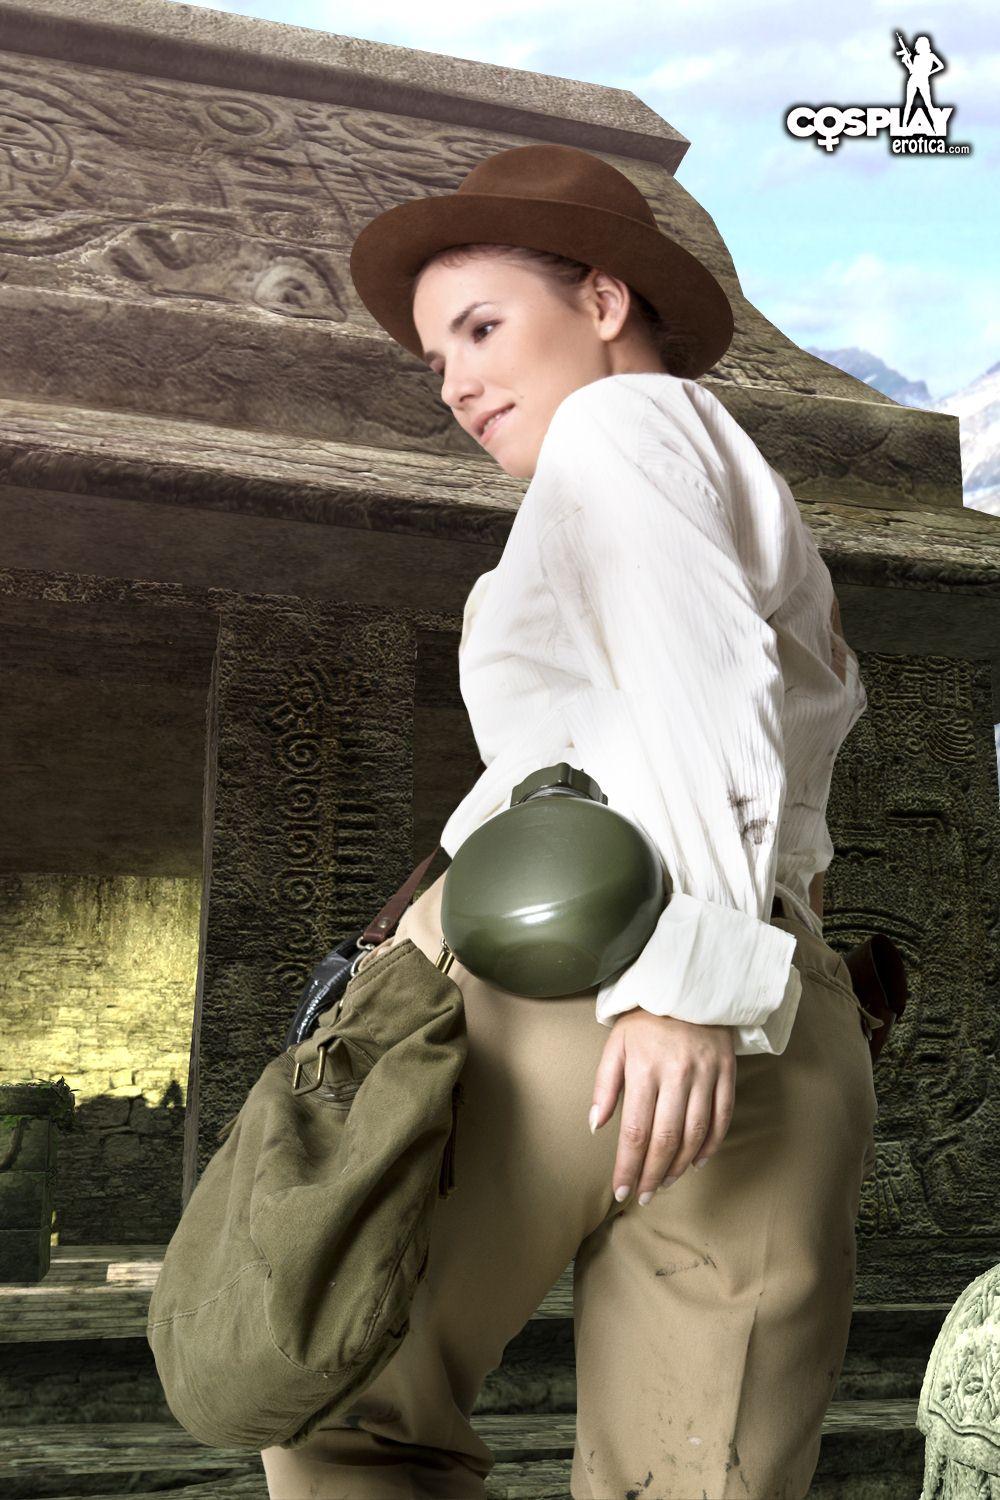 La cosplayeuse Cassie se déguise en Indiana Jones féminine et sexy.
 #53702657